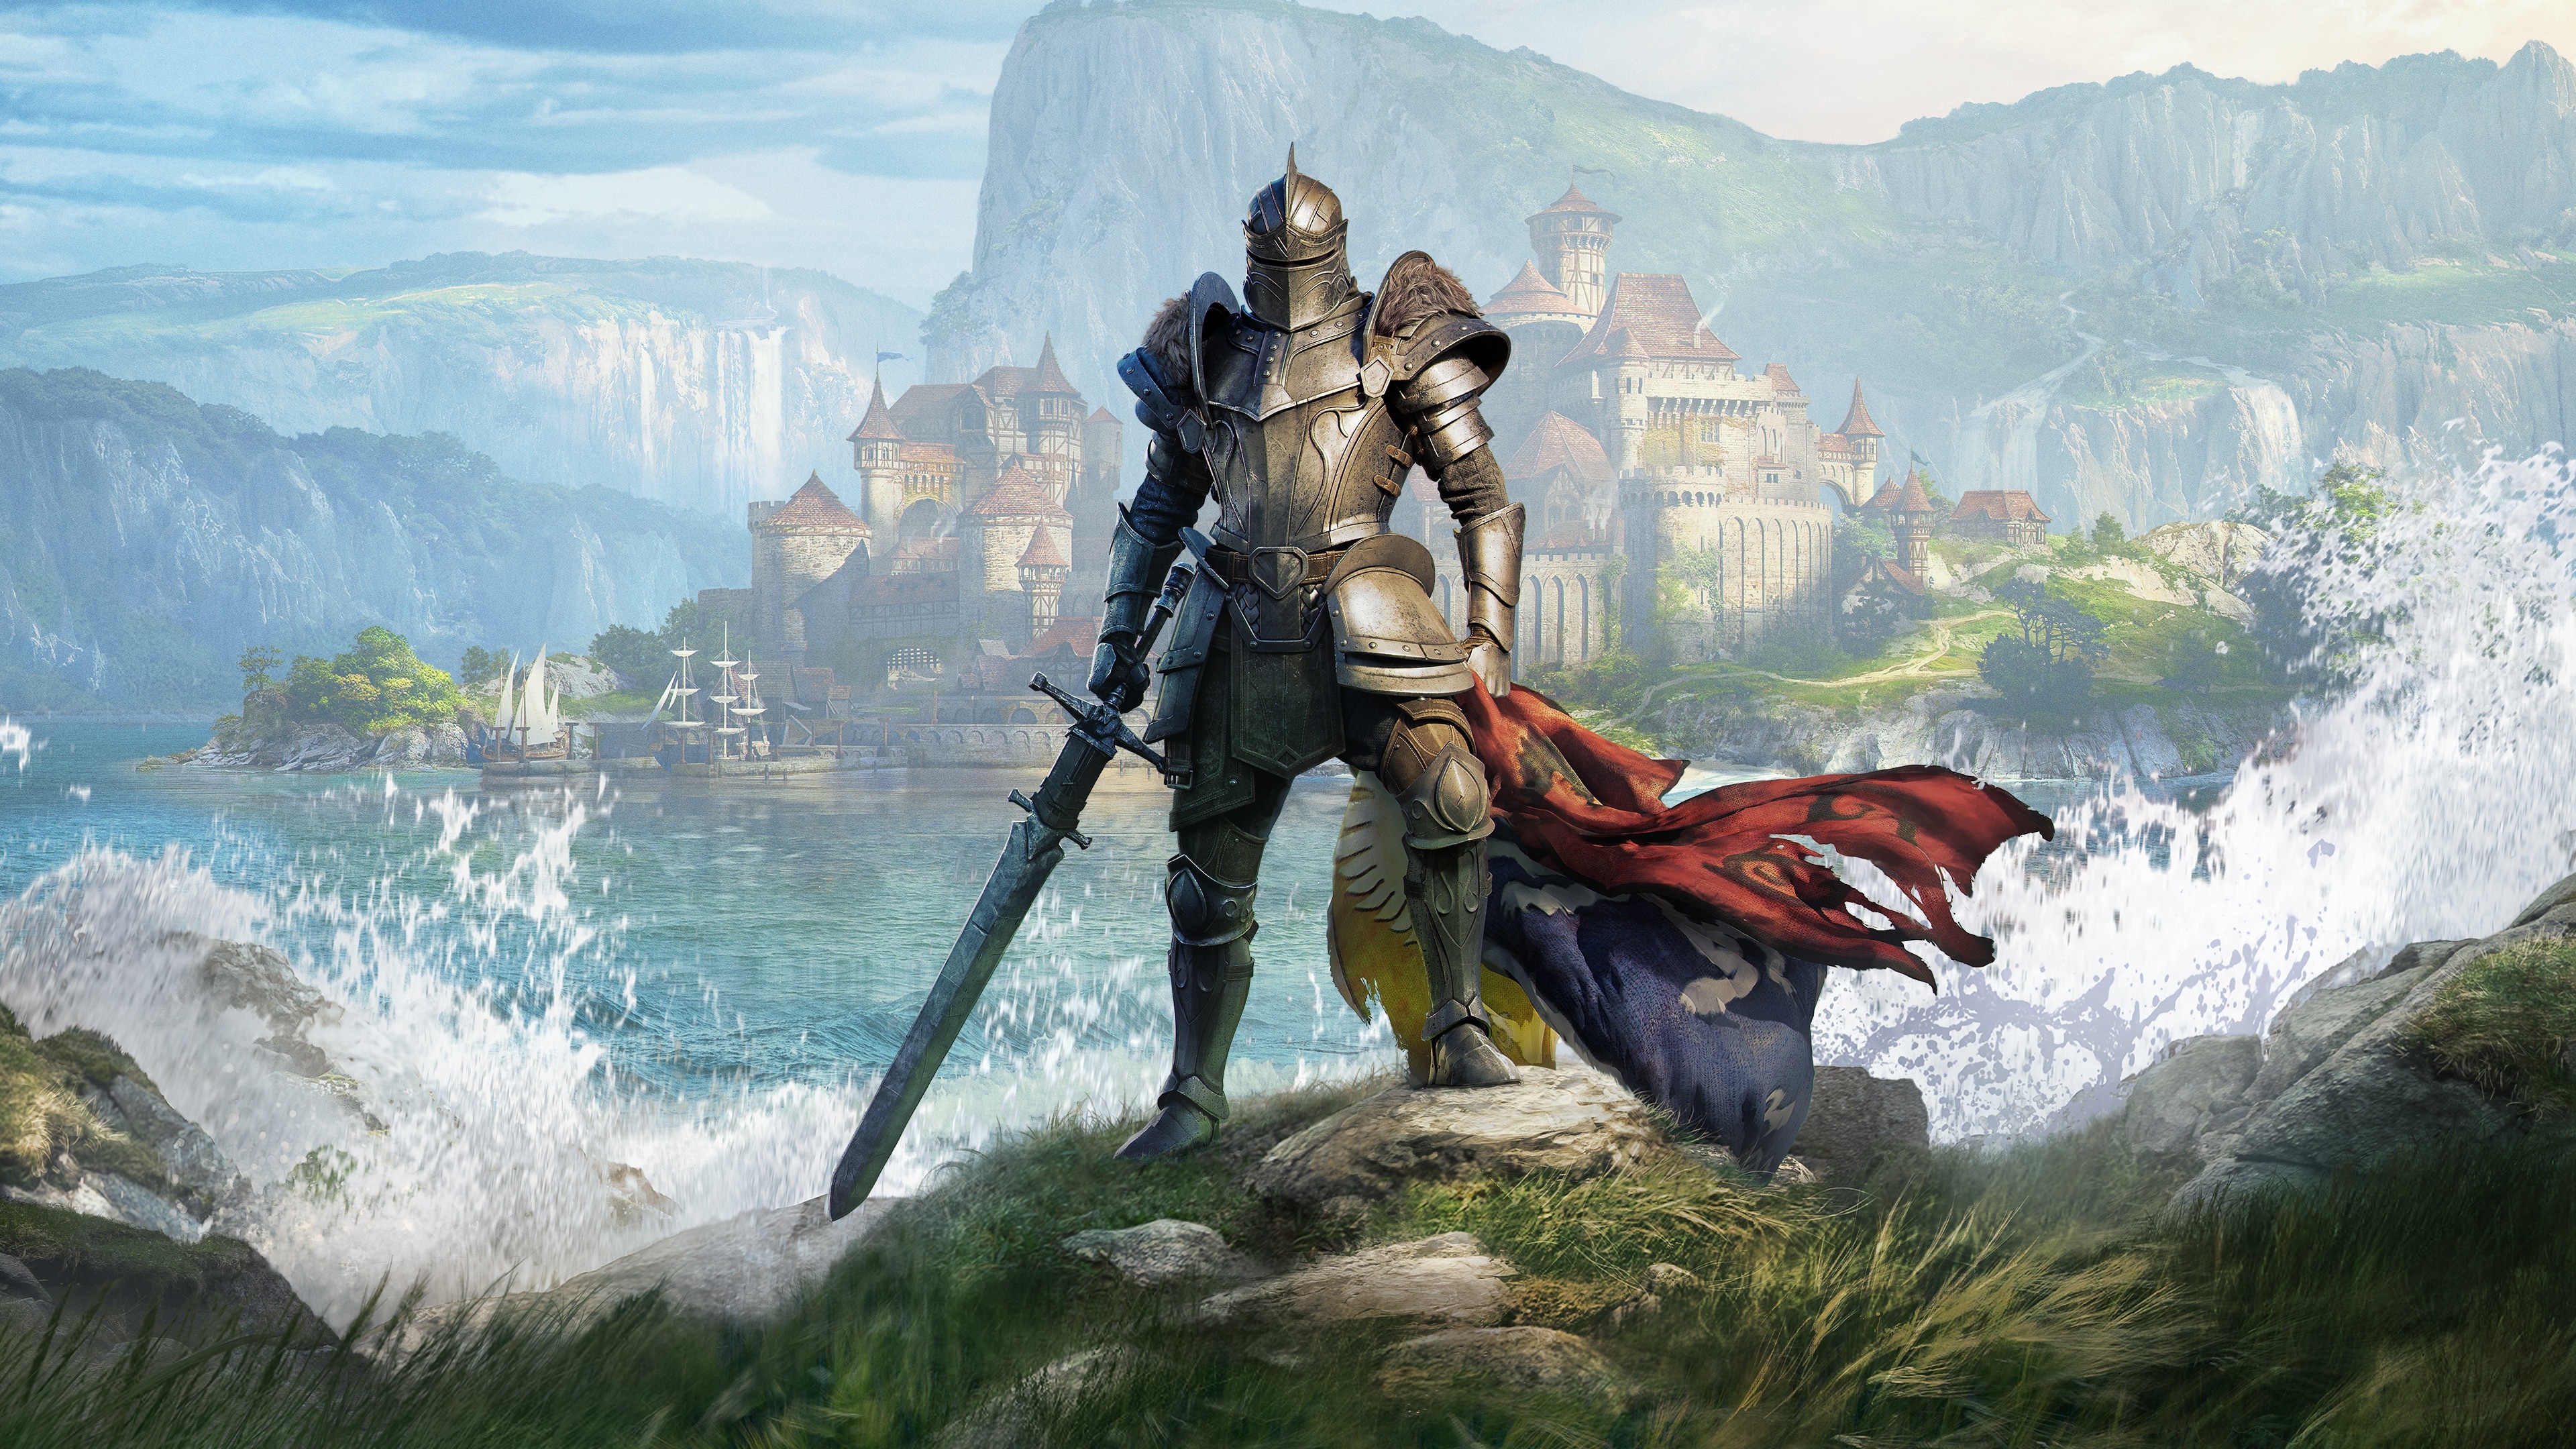 The Elder Scrolls Online Knight Digital Art Artwork Illustration Landscape Waves Sea Castle Mountain 3840x2160